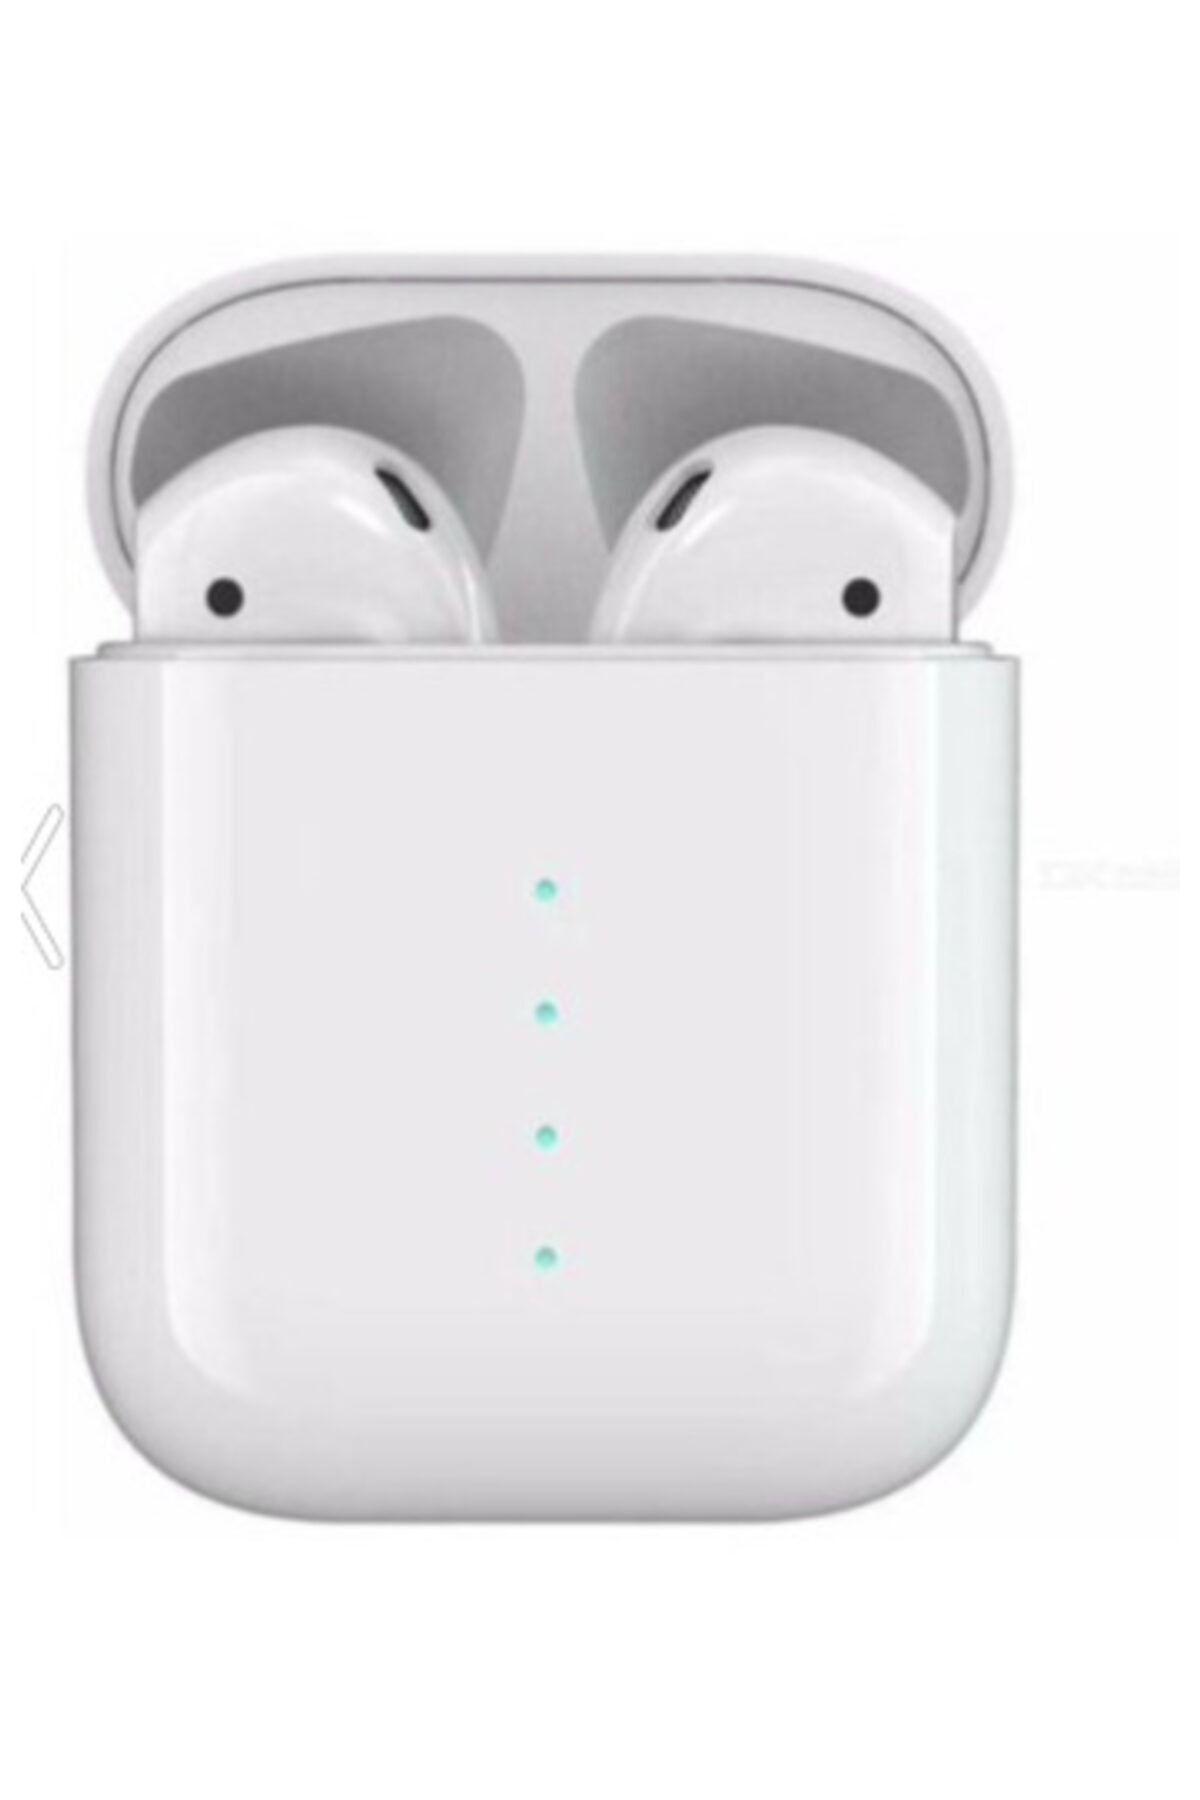 Polygold I100 Kablosuz Pop Up Kulakiçi Bluetooth 5.0 Kulaklık Stereo Hifi Kulaklık Desteği Şarjlı Beyaz